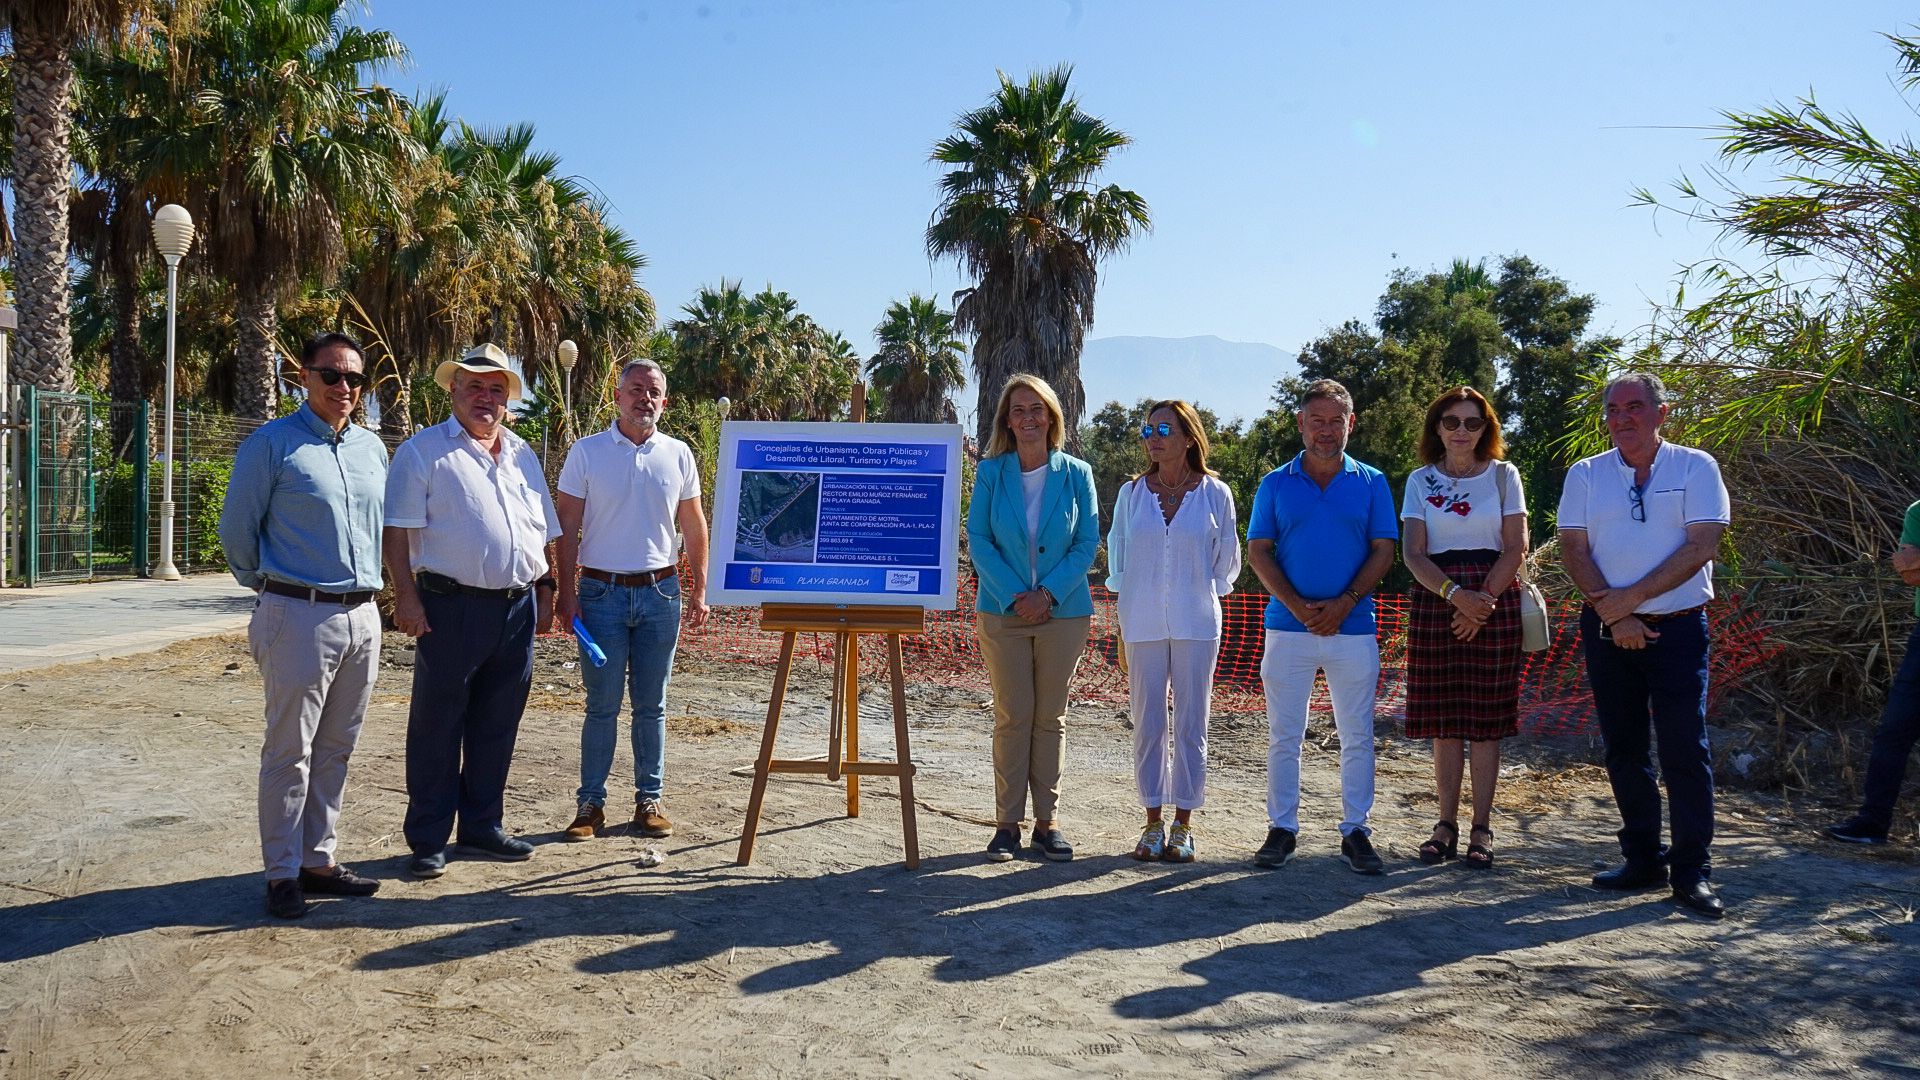 Playa Granada y playa de Poniente estarán unidas por un vial que construirá el ayuntamiento de Motril a partir de septiembre.